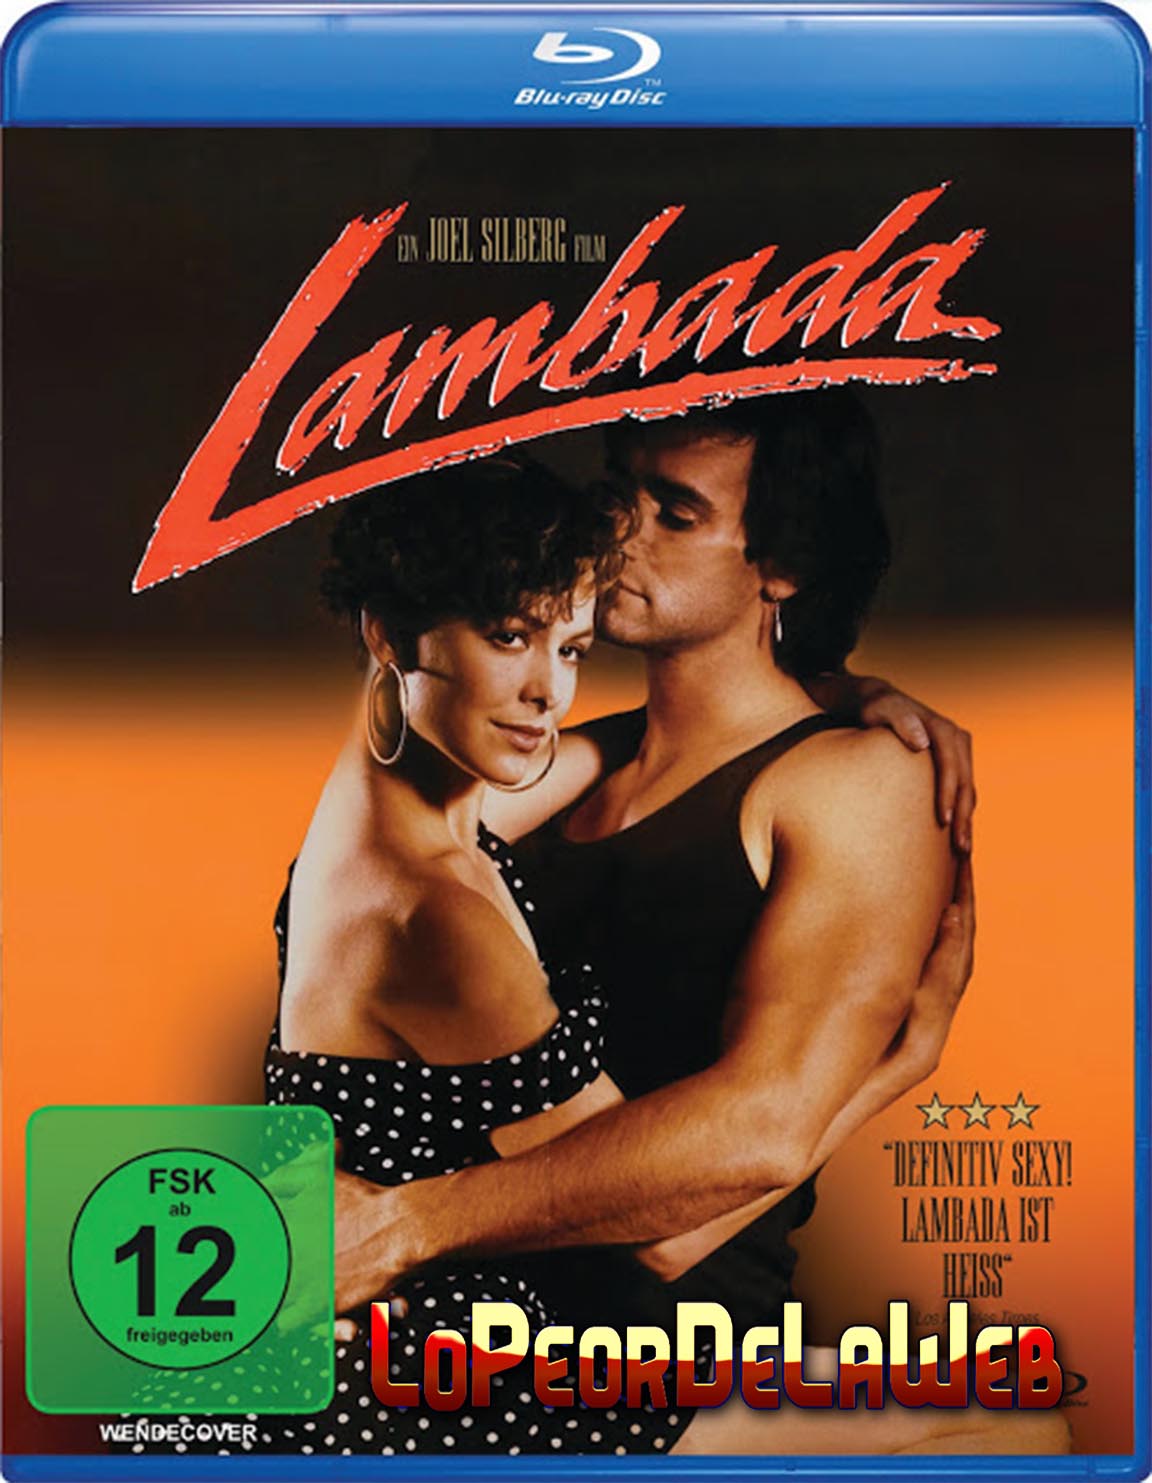 Lambada: Fuego en el Cuerpo (1990 - Latino / Inglés + Subt)